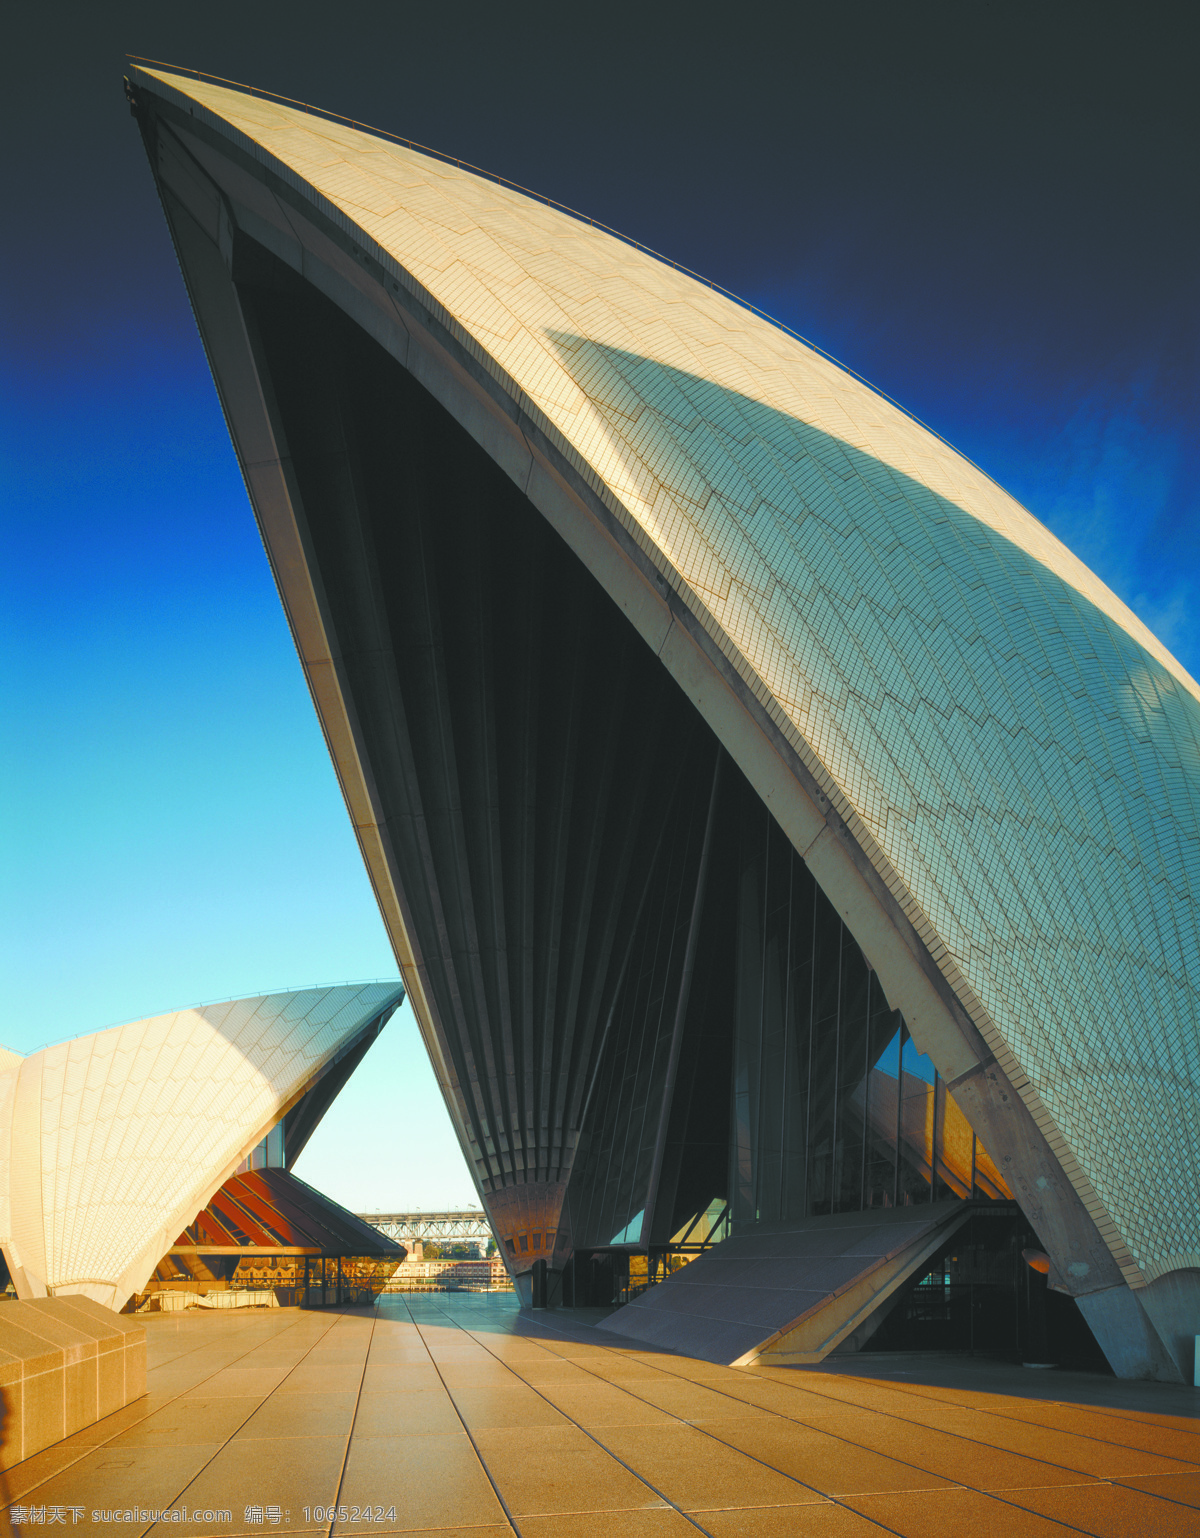 悉尼歌剧院 澳大利亚 澳洲 悉尼 歌剧院 蓝天 建筑 国外旅游 旅游摄影